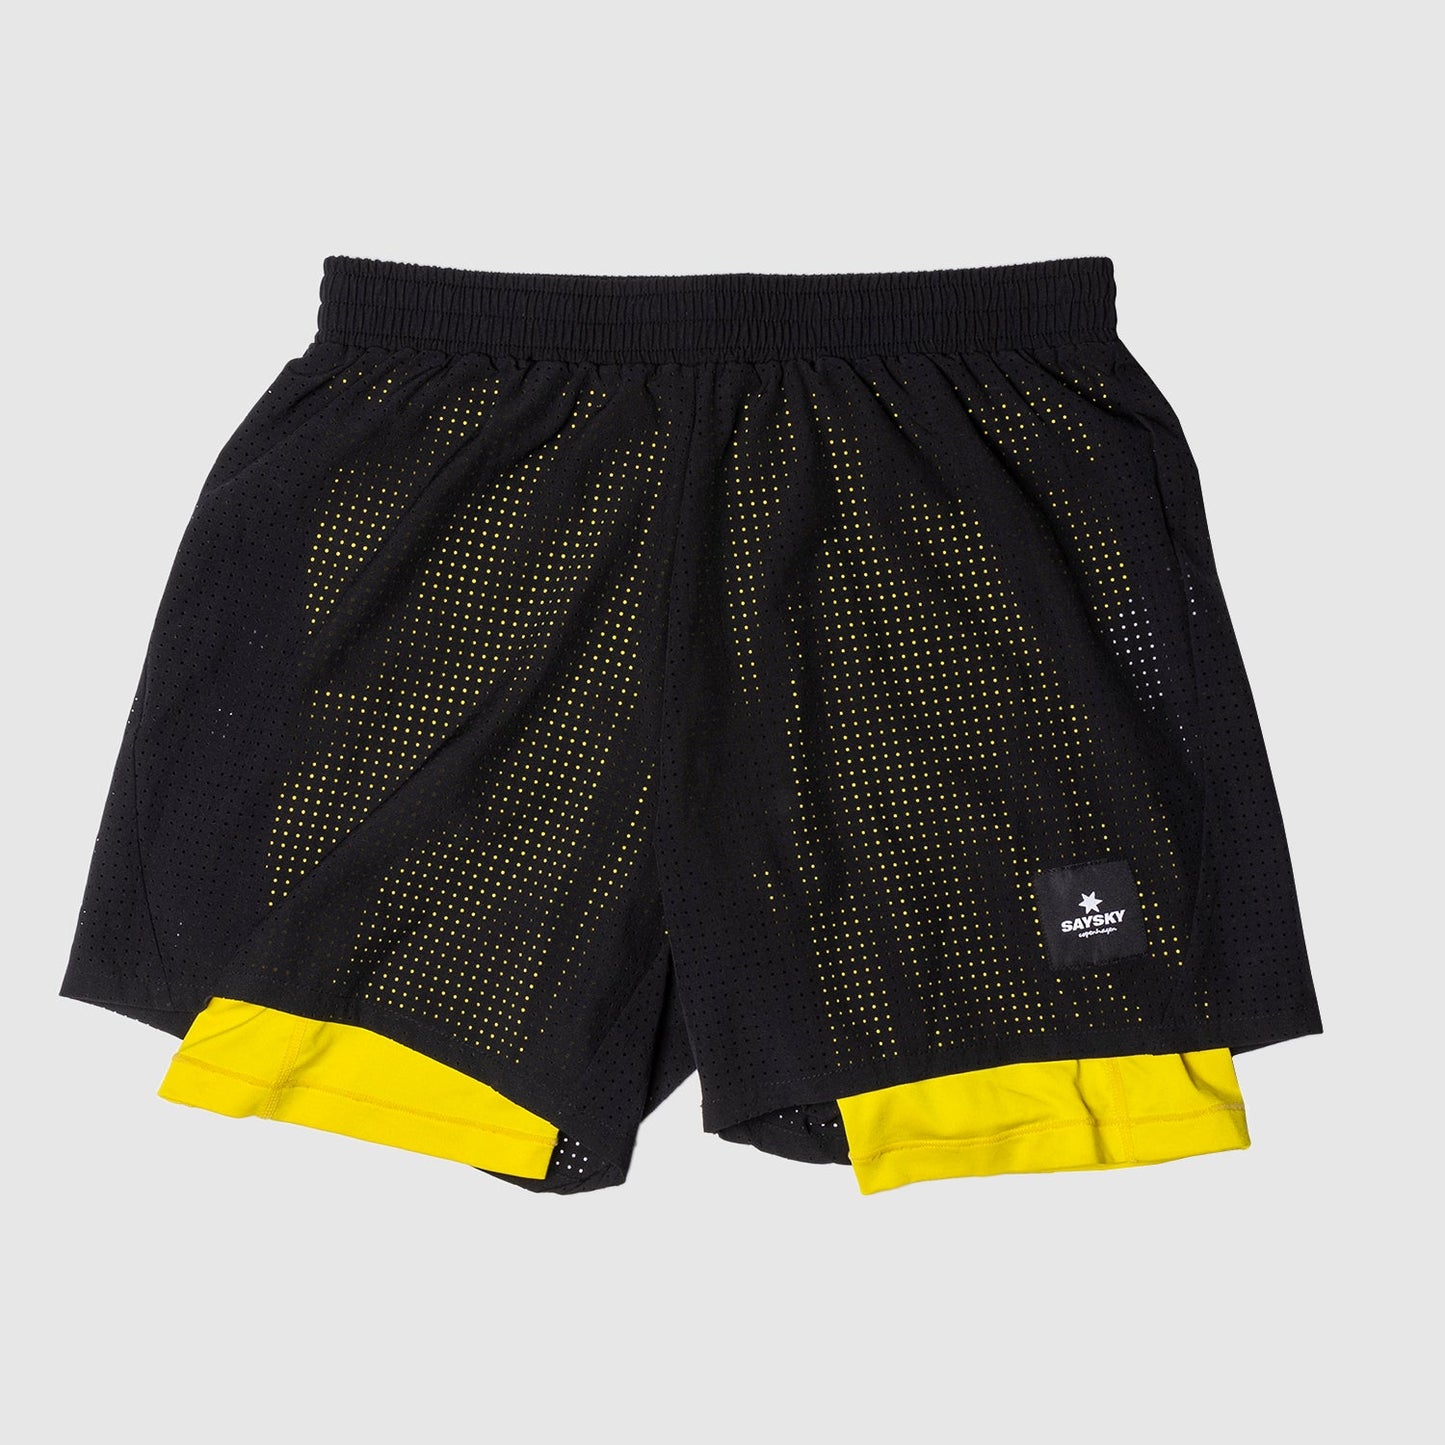 ランニングショーツ HMRSH05 2-in-1 Shorts - Black/Empire Yellow [ユニセックス]